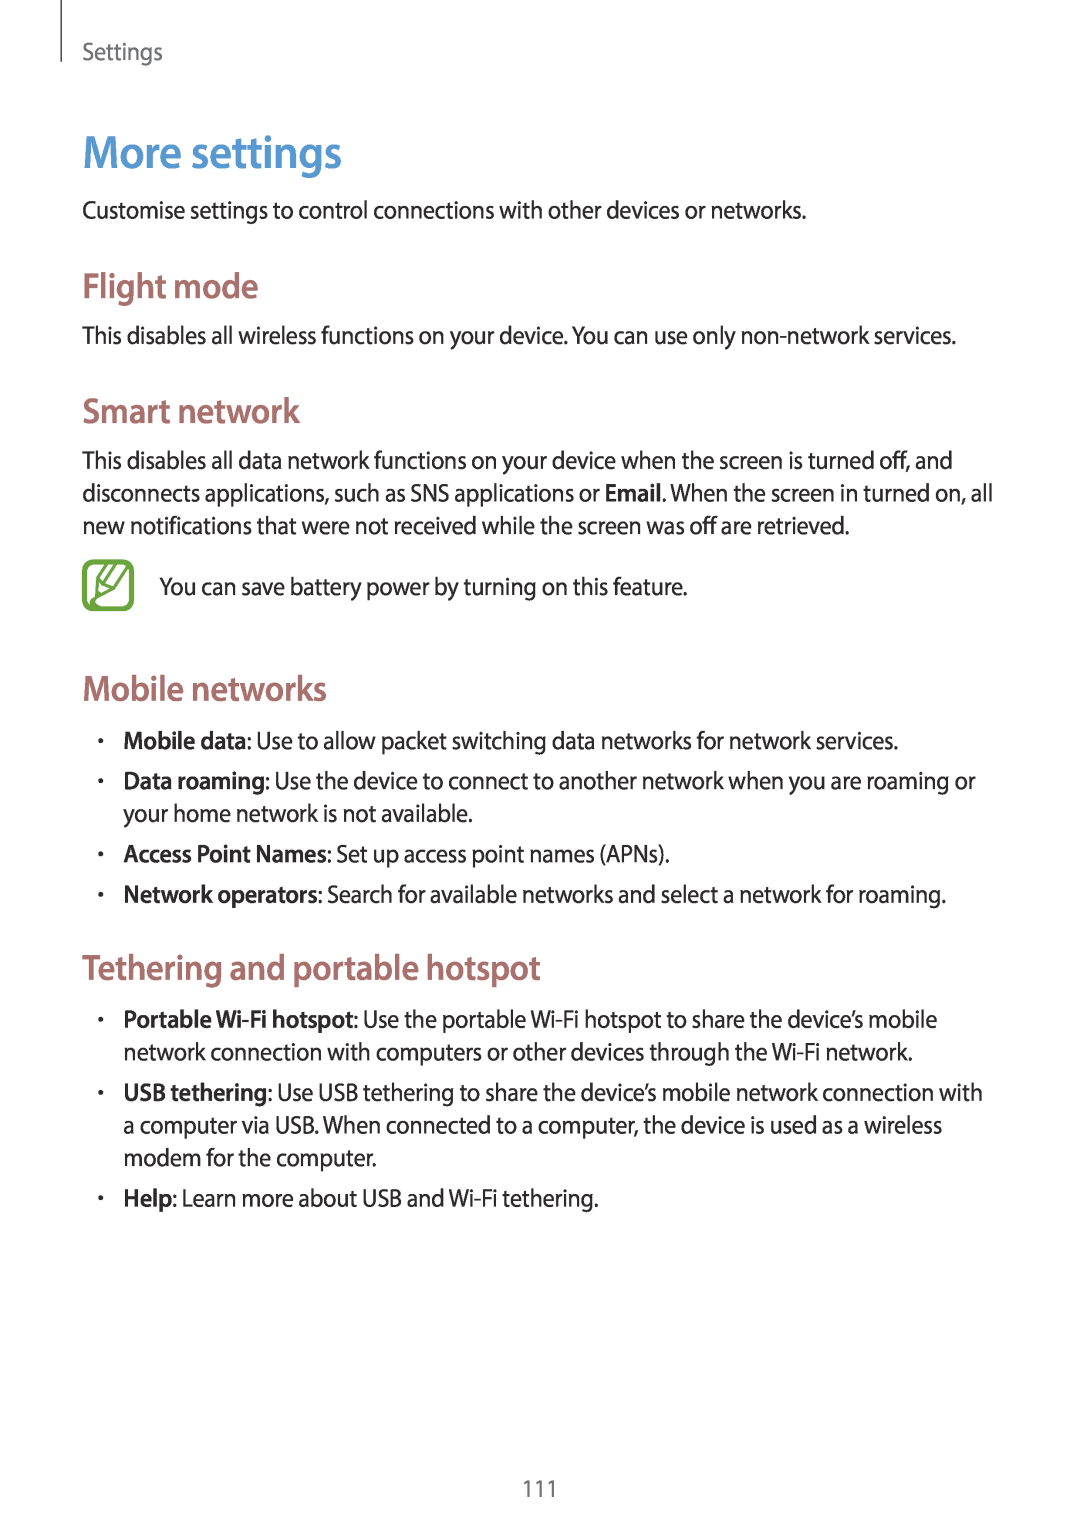 Samsung EK-GC100 More settings, Flight mode, Smart network, Mobile networks, Tethering and portable hotspot, Settings 